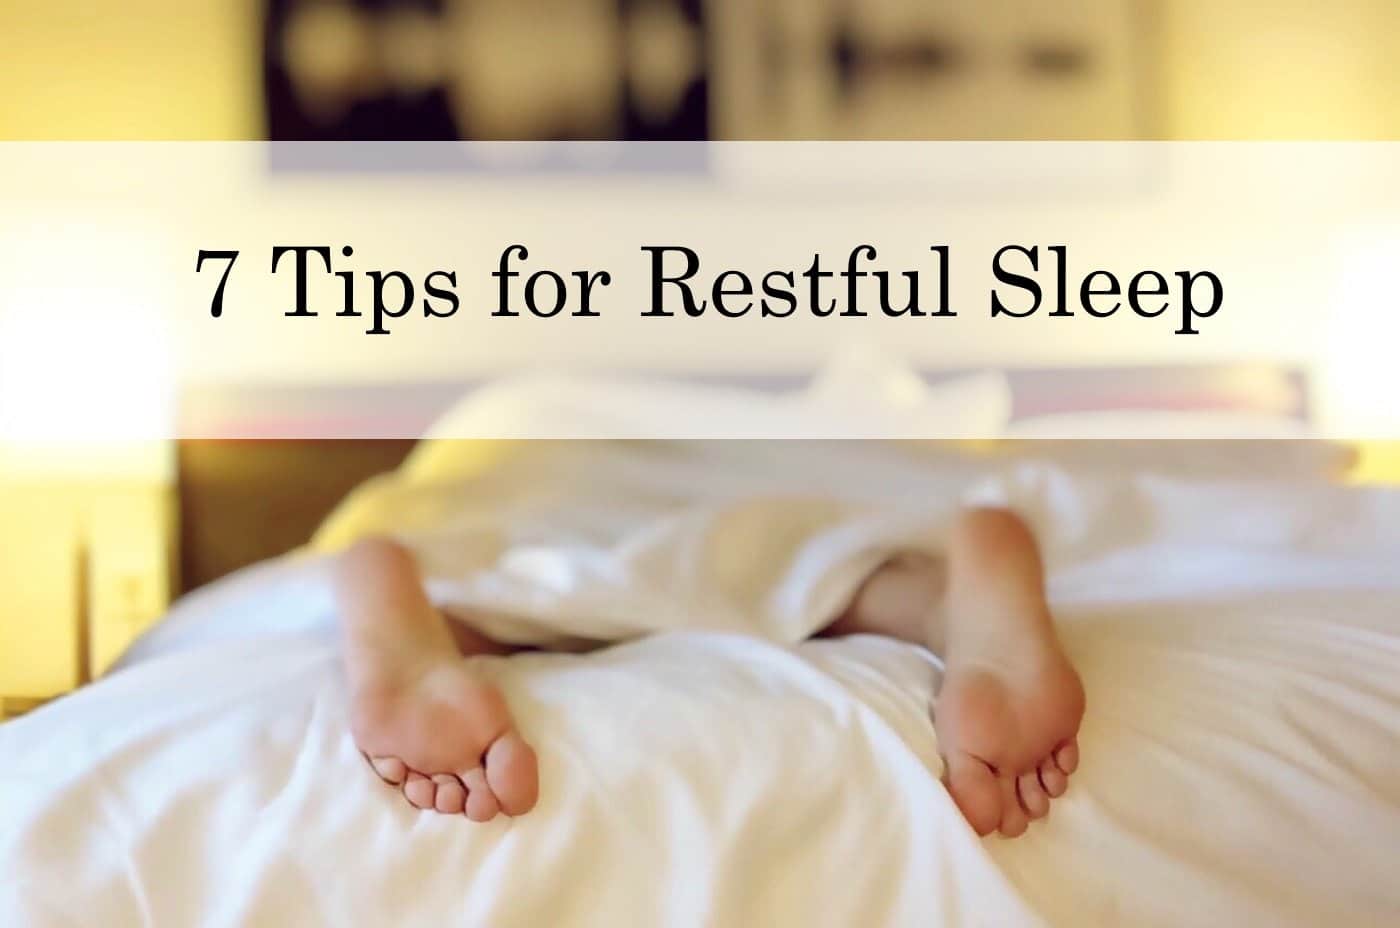 7 Tips for Restful Sleep